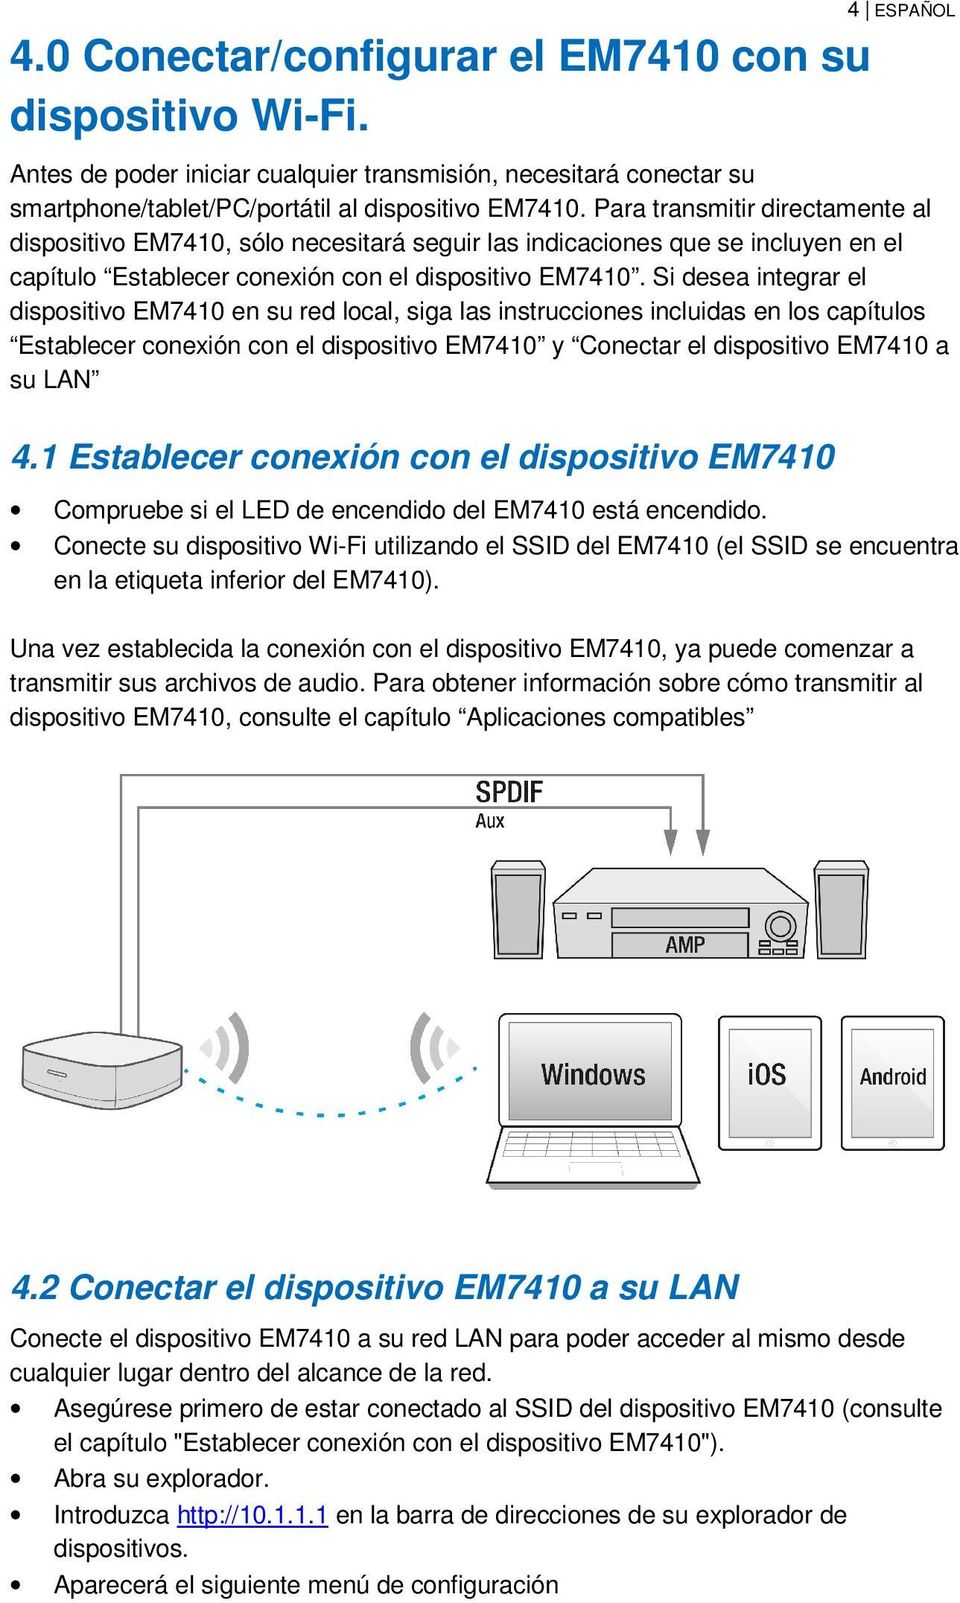 Si desea integrar el dispositivo EM7410 en su red local, siga las instrucciones incluidas en los capítulos Establecer conexión con el dispositivo EM7410 y Conectar el dispositivo EM7410 a su LAN 4.